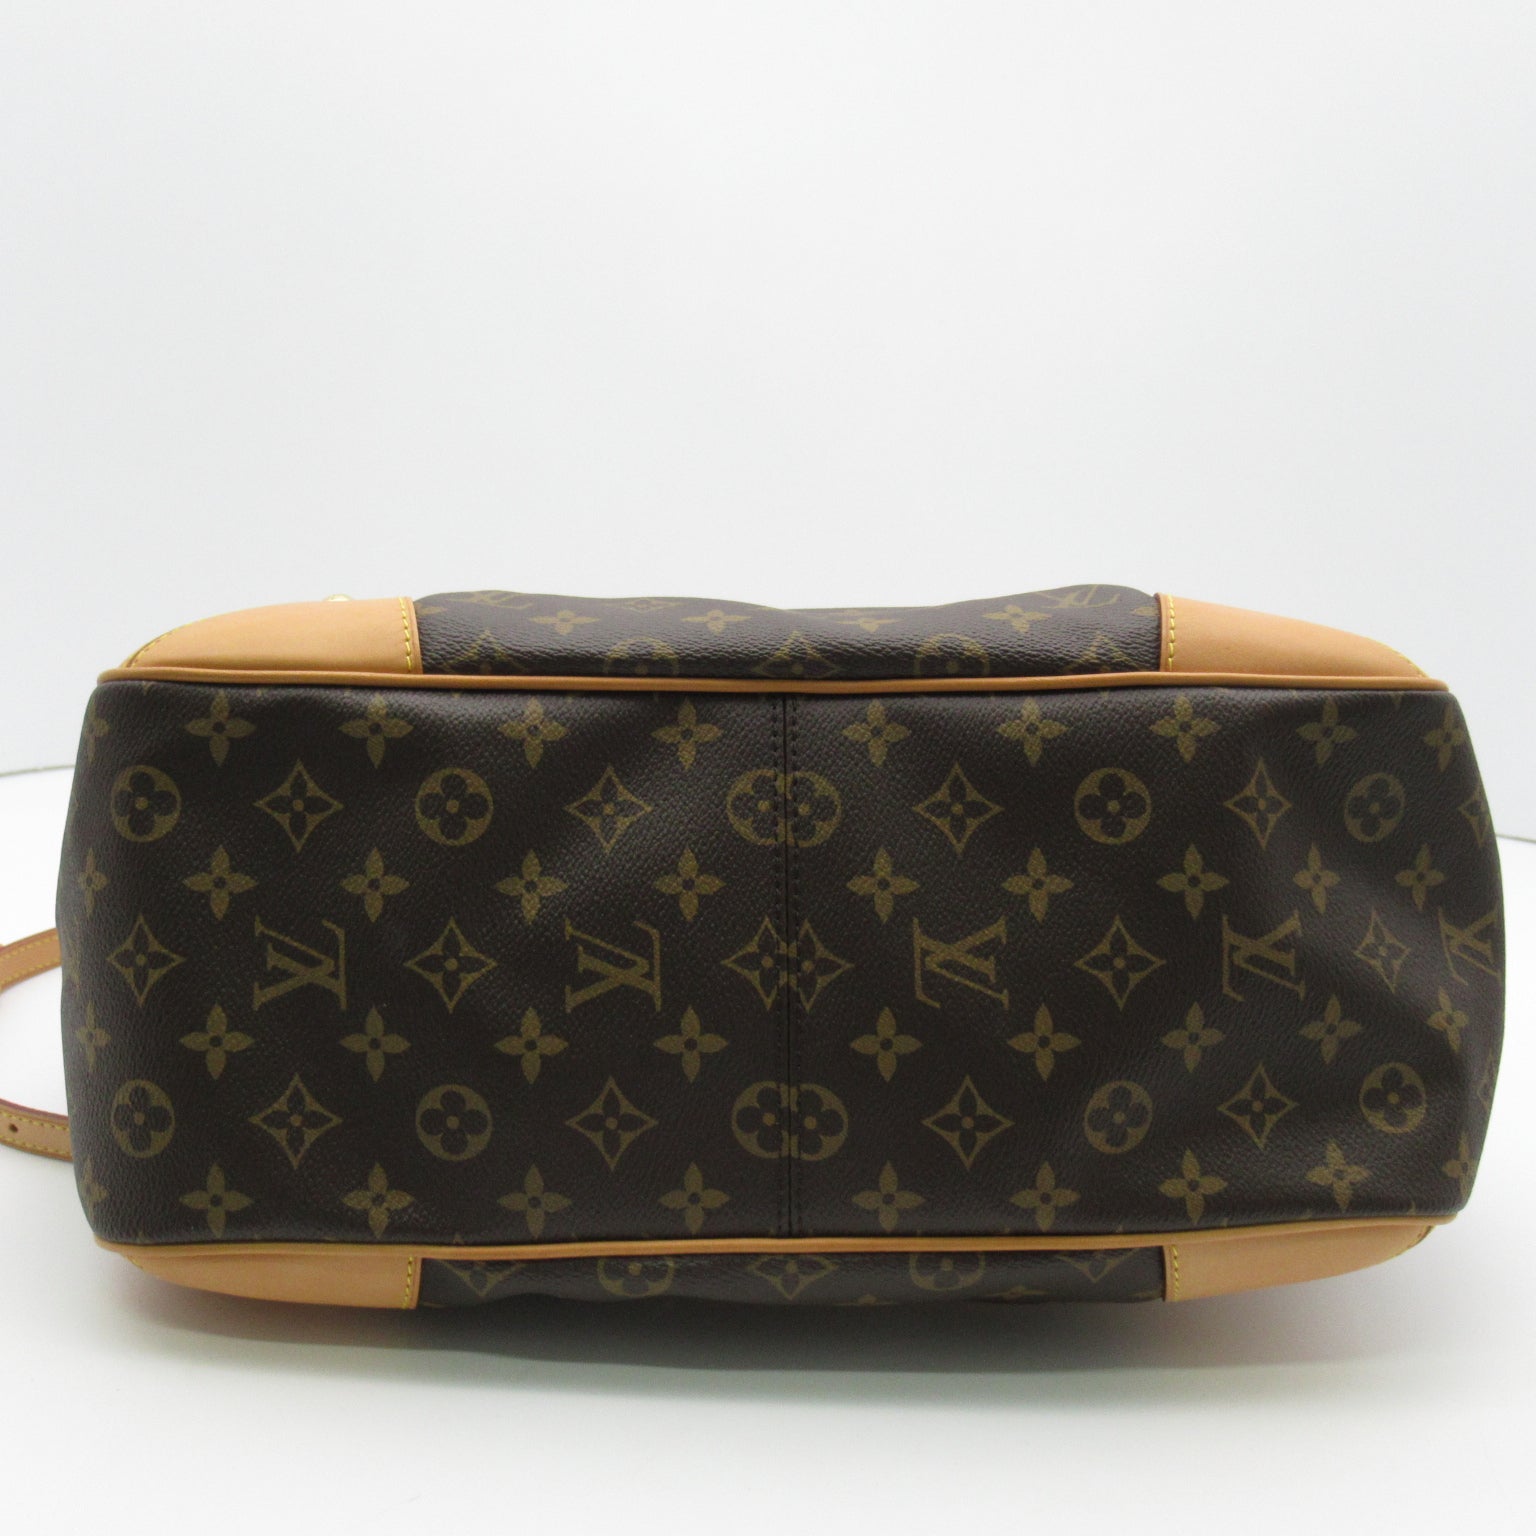 Louis Vuitton Louis Vuitton Esther MM 2w Shoulder Bag 2way Shoulder Bag PVC Coated Canvas Monogram  Brown M41232